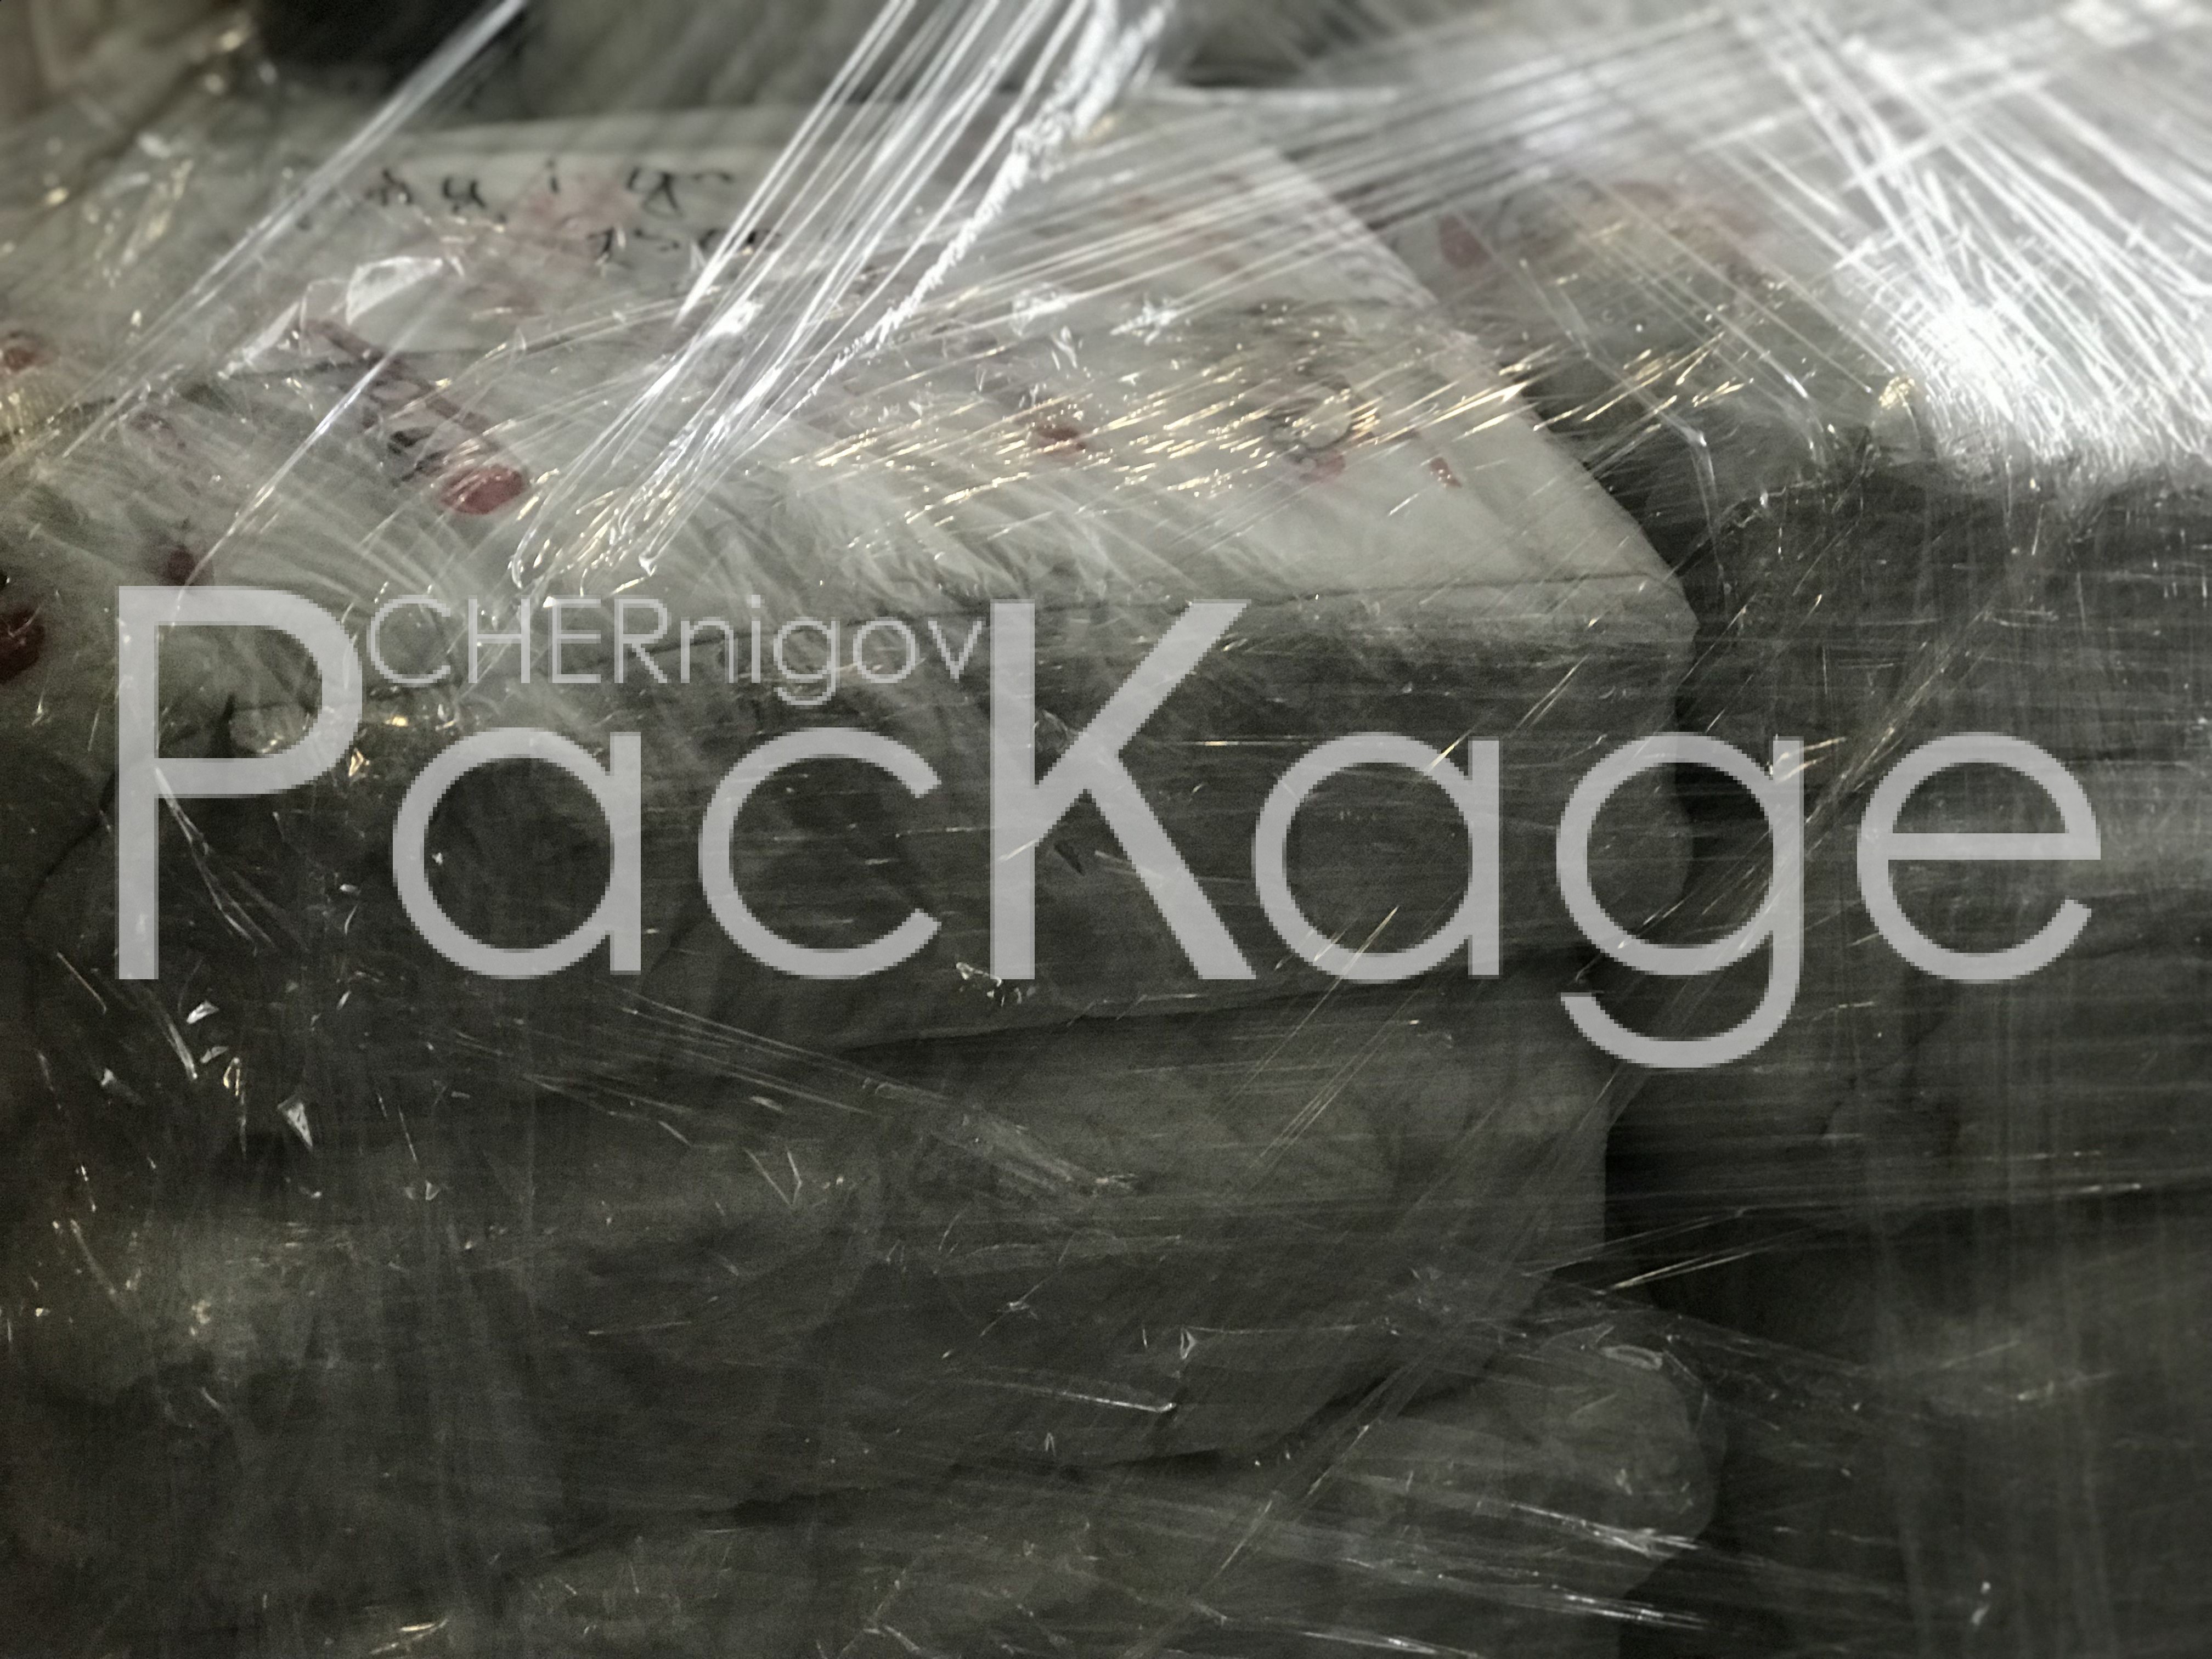 Рукав полиэтиленовый упаковочный Chernigov Package - Фото IMG_5777